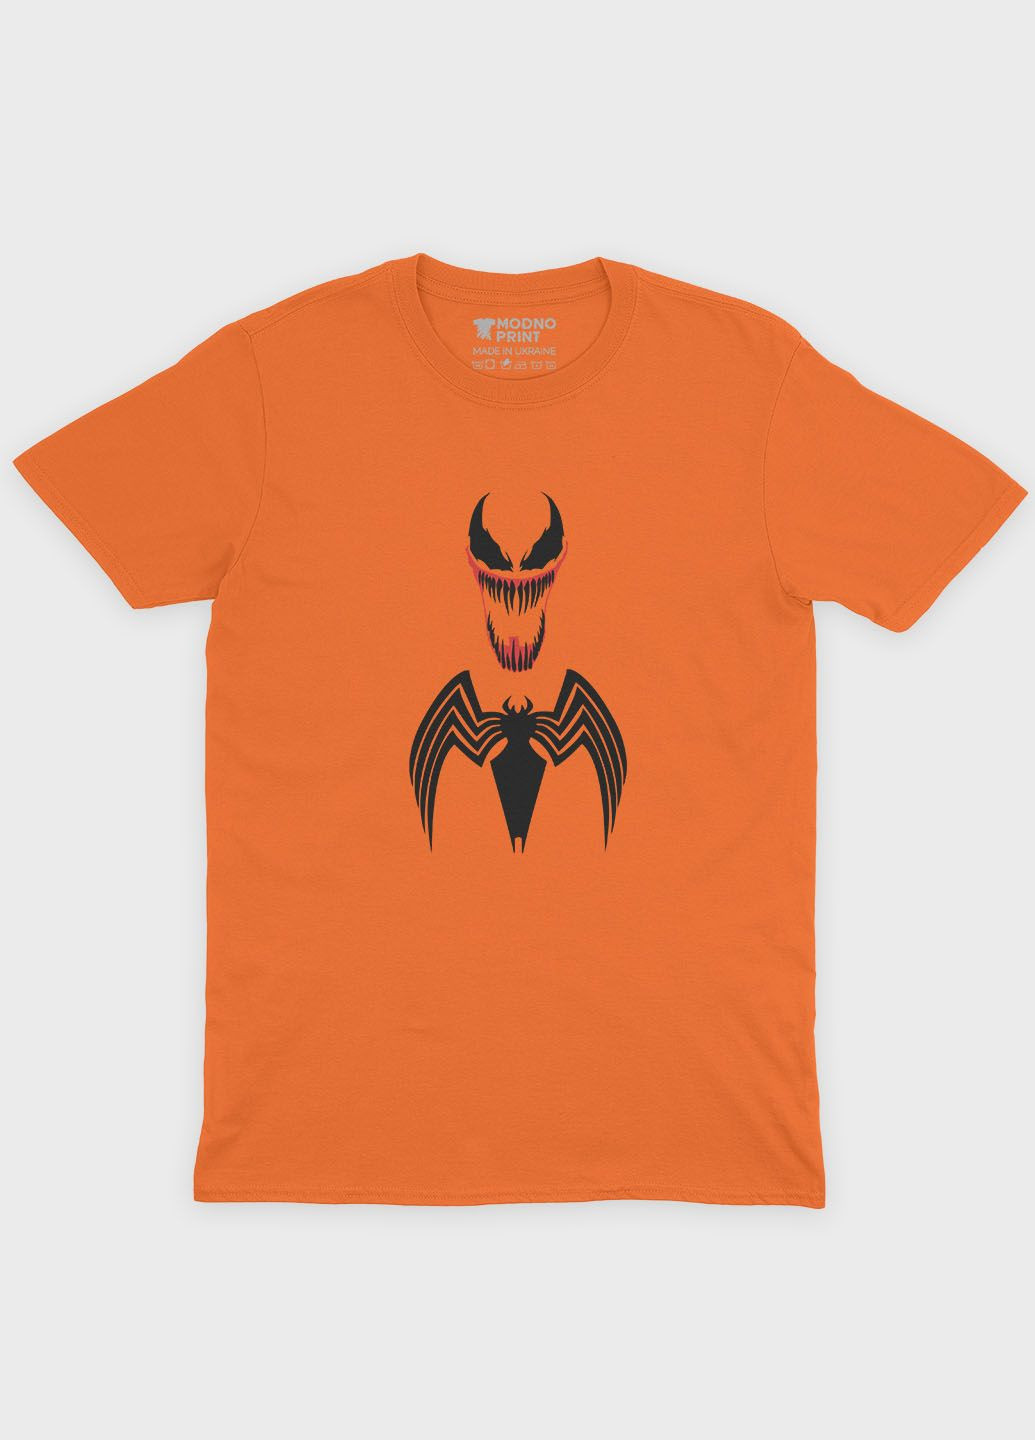 Оранжевая демисезонная футболка для девочки с принтом супервора - веном (ts001-1-ora-006-013-008-g) Modno